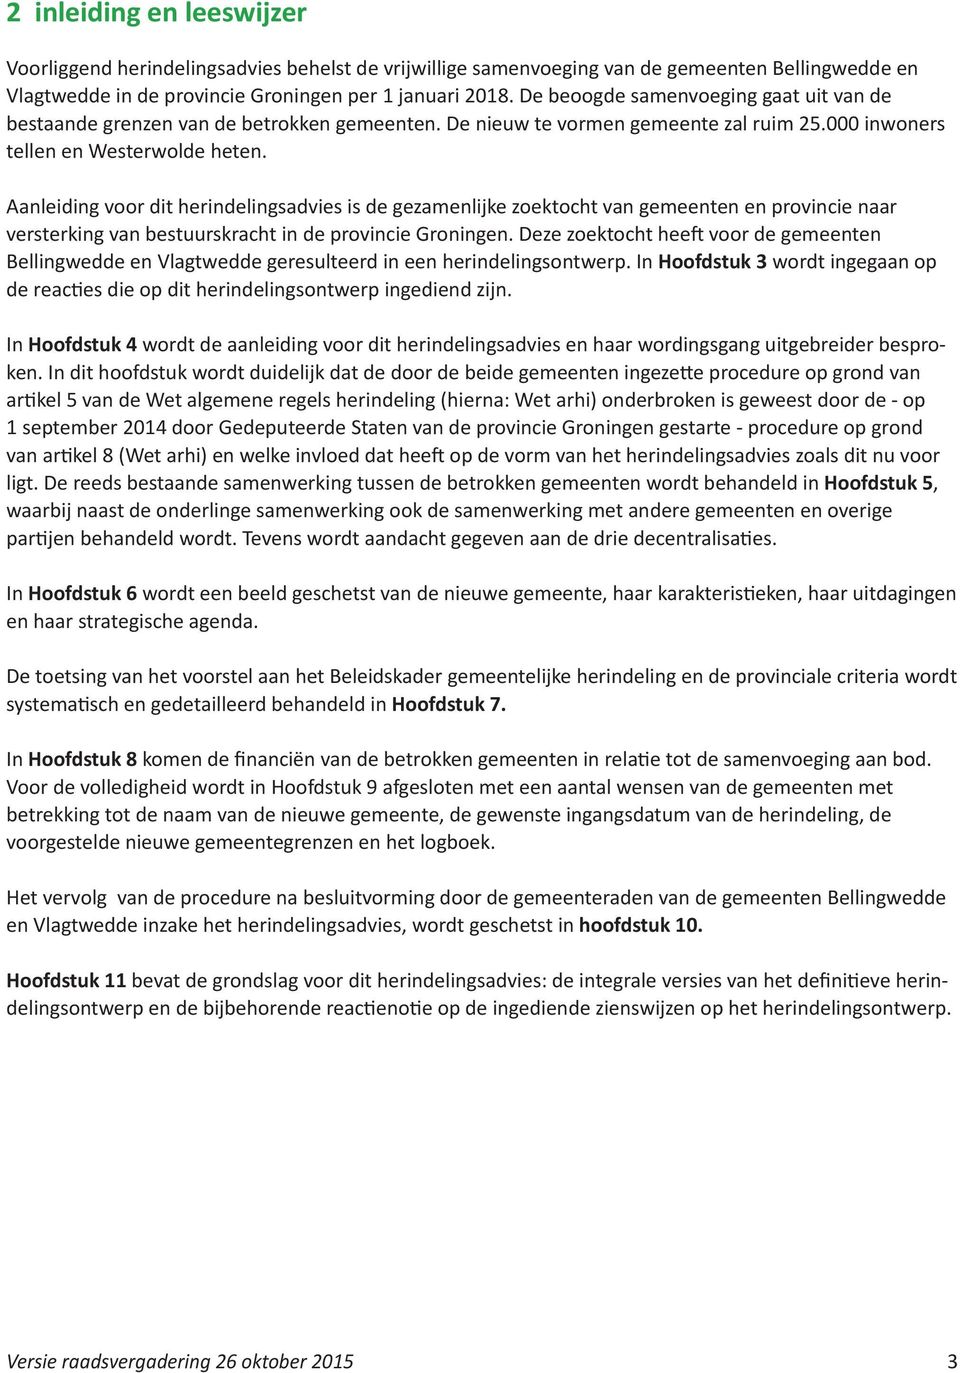 Aanleiding voor dit herindelingsadvies is de gezamenlijke zoektocht van gemeenten en provincie naar versterking van bestuurskracht in de provincie Groningen.